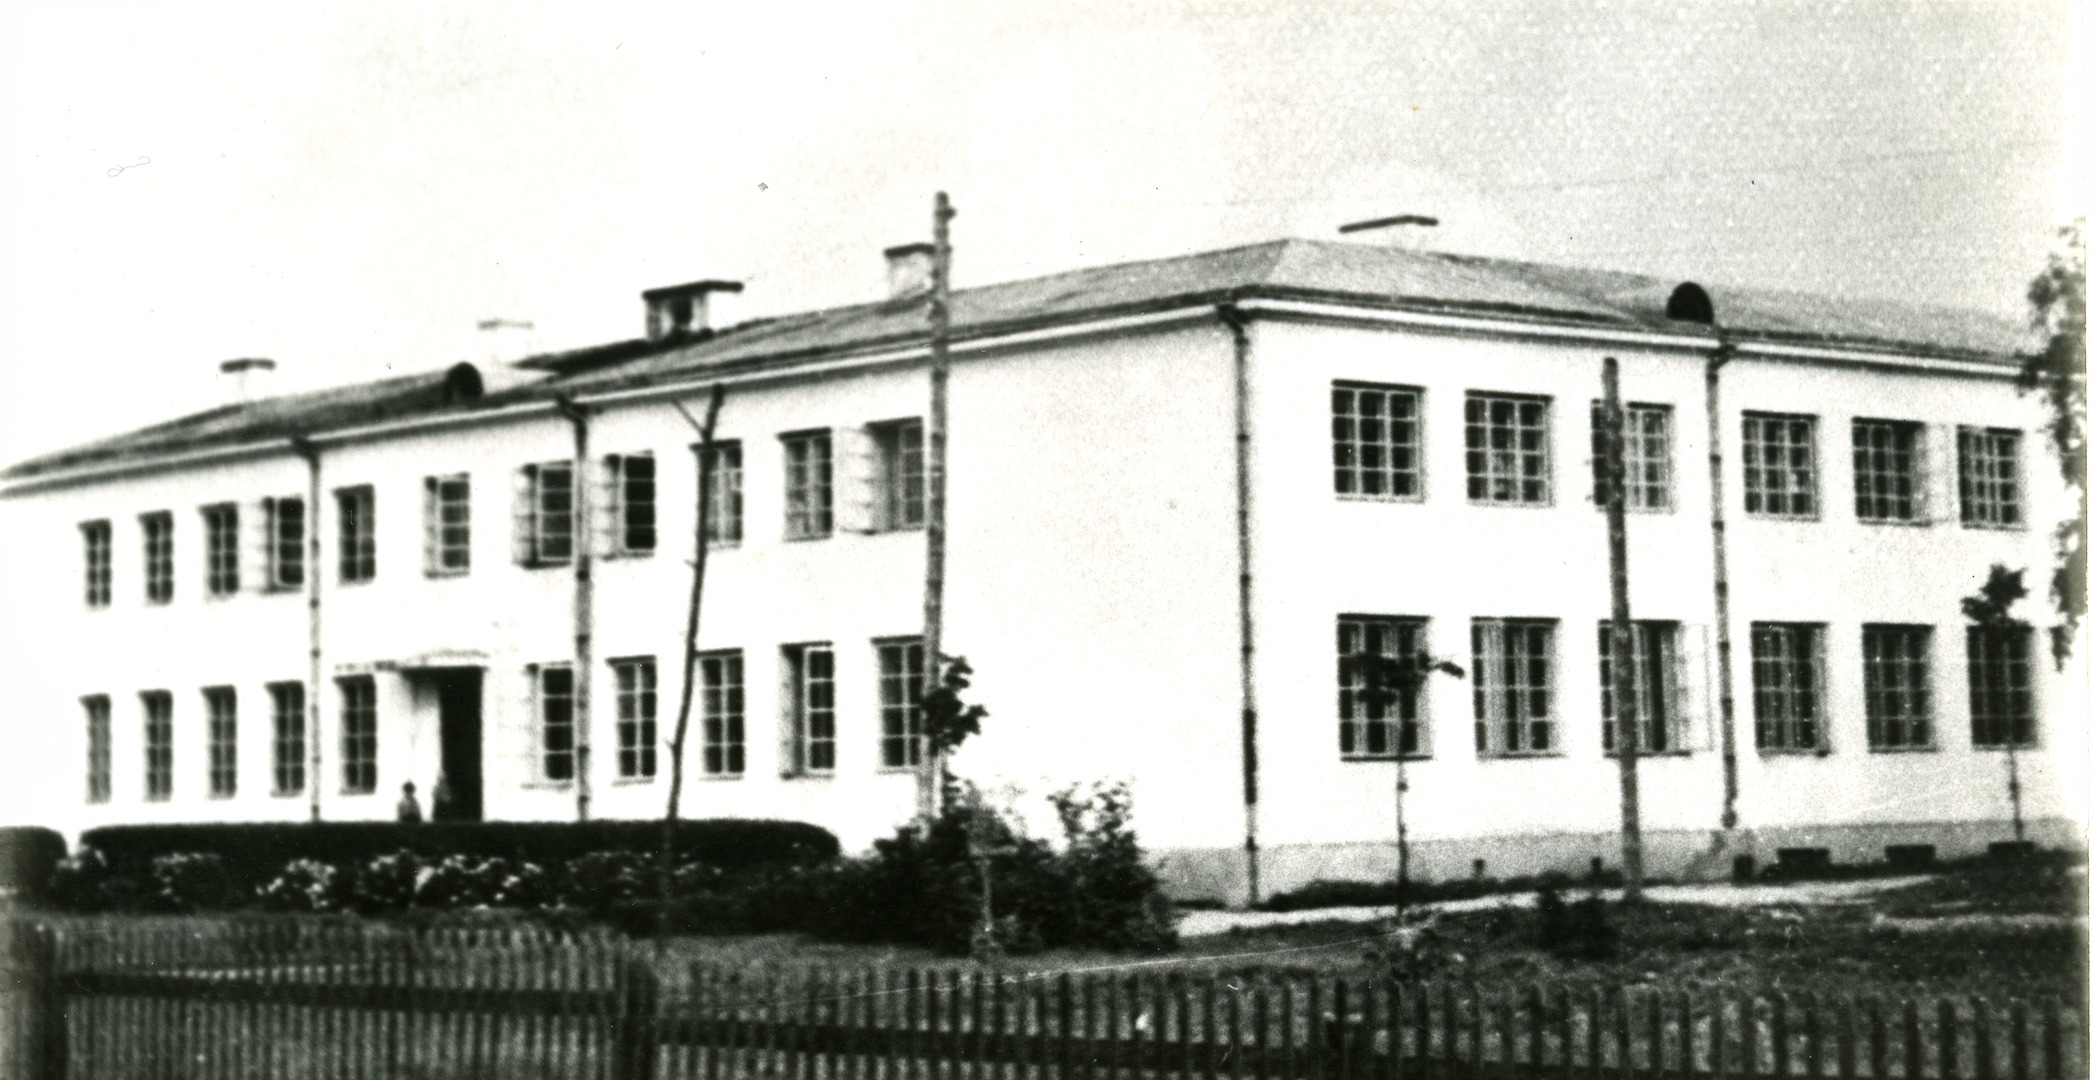 Kallemäe schoolhouse